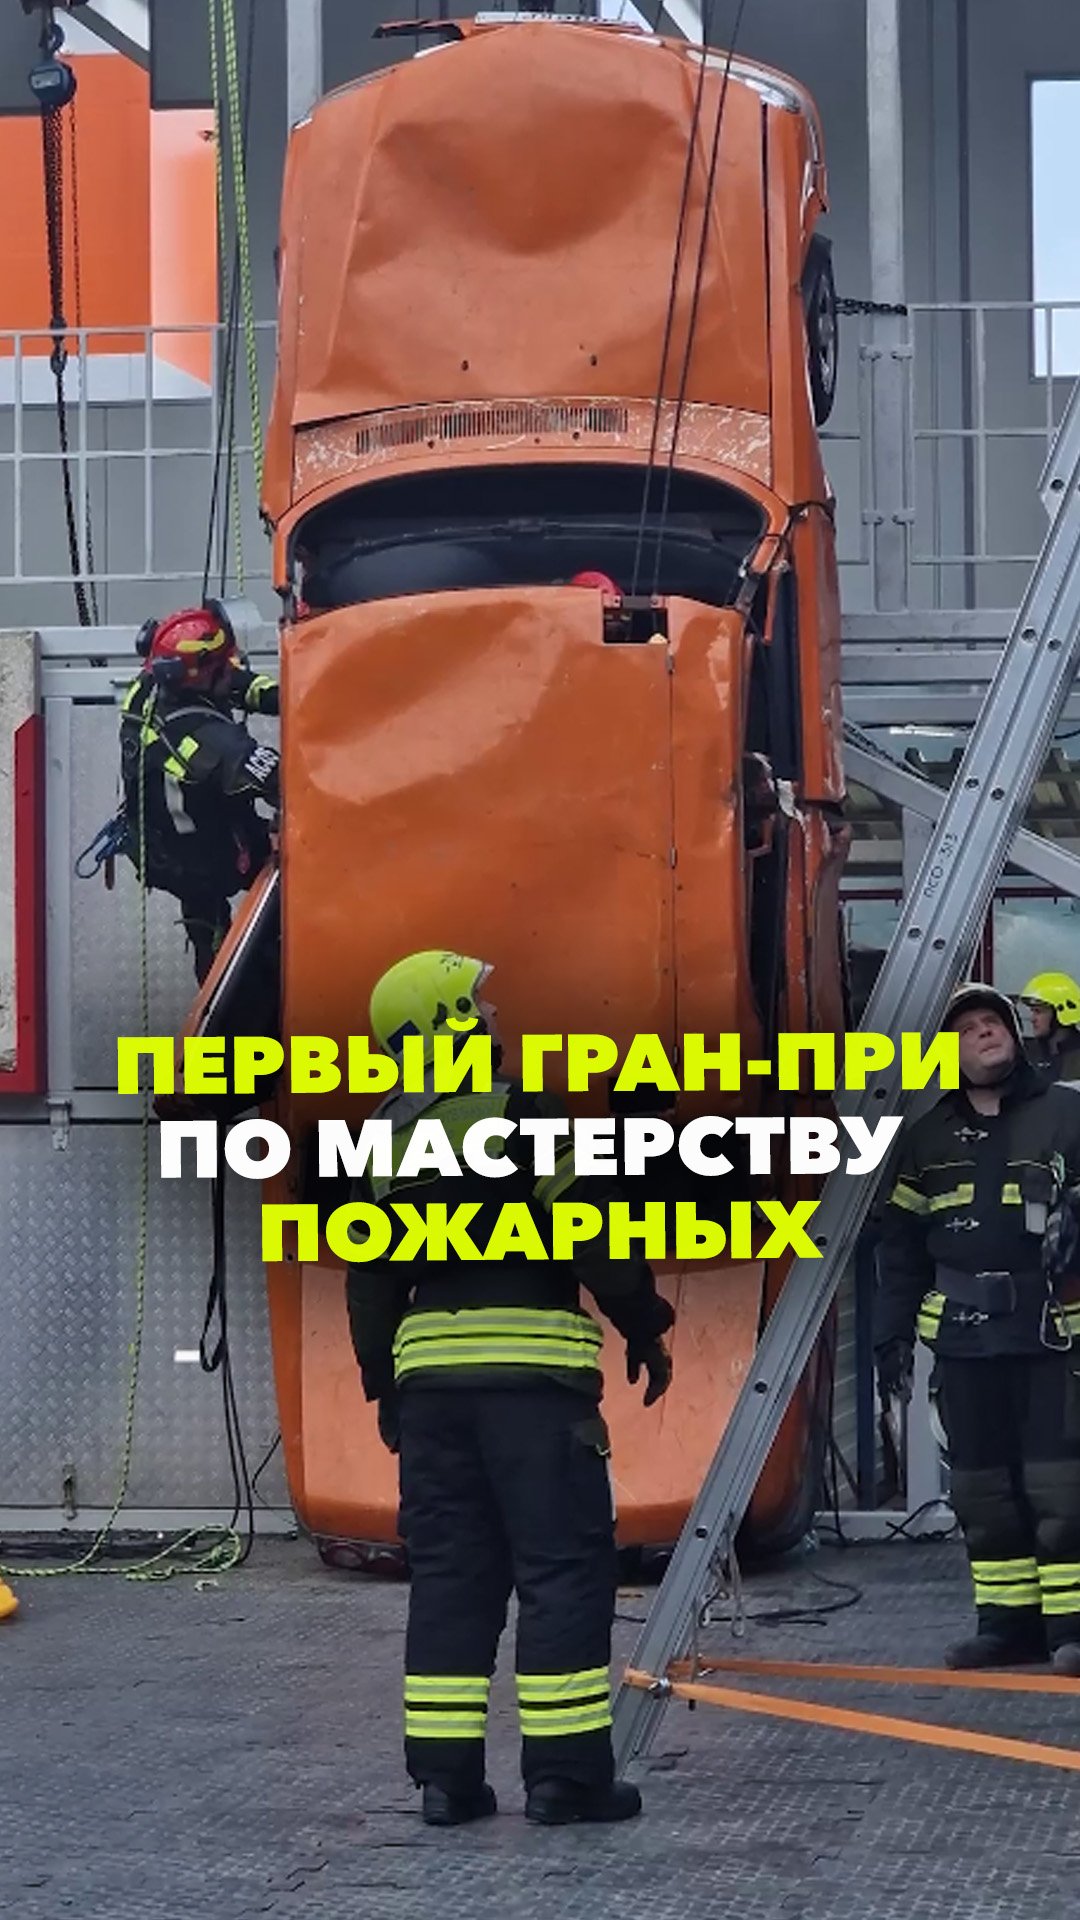 1-й международный Гран-при профессионального мастерства пожарных и спасателей